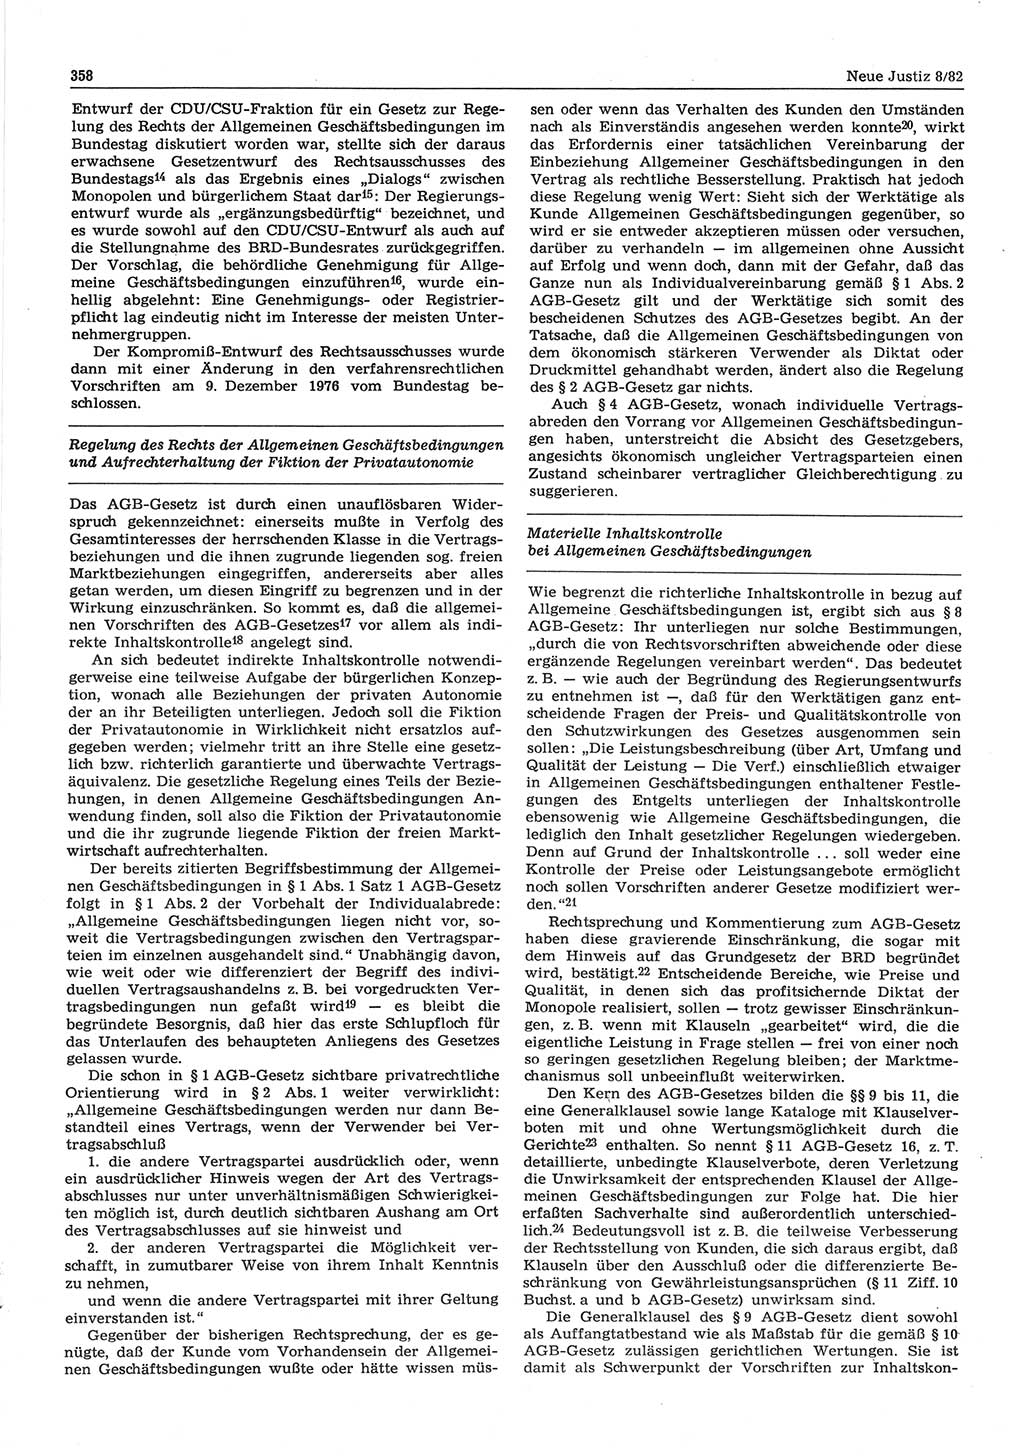 Neue Justiz (NJ), Zeitschrift für sozialistisches Recht und Gesetzlichkeit [Deutsche Demokratische Republik (DDR)], 36. Jahrgang 1982, Seite 358 (NJ DDR 1982, S. 358)